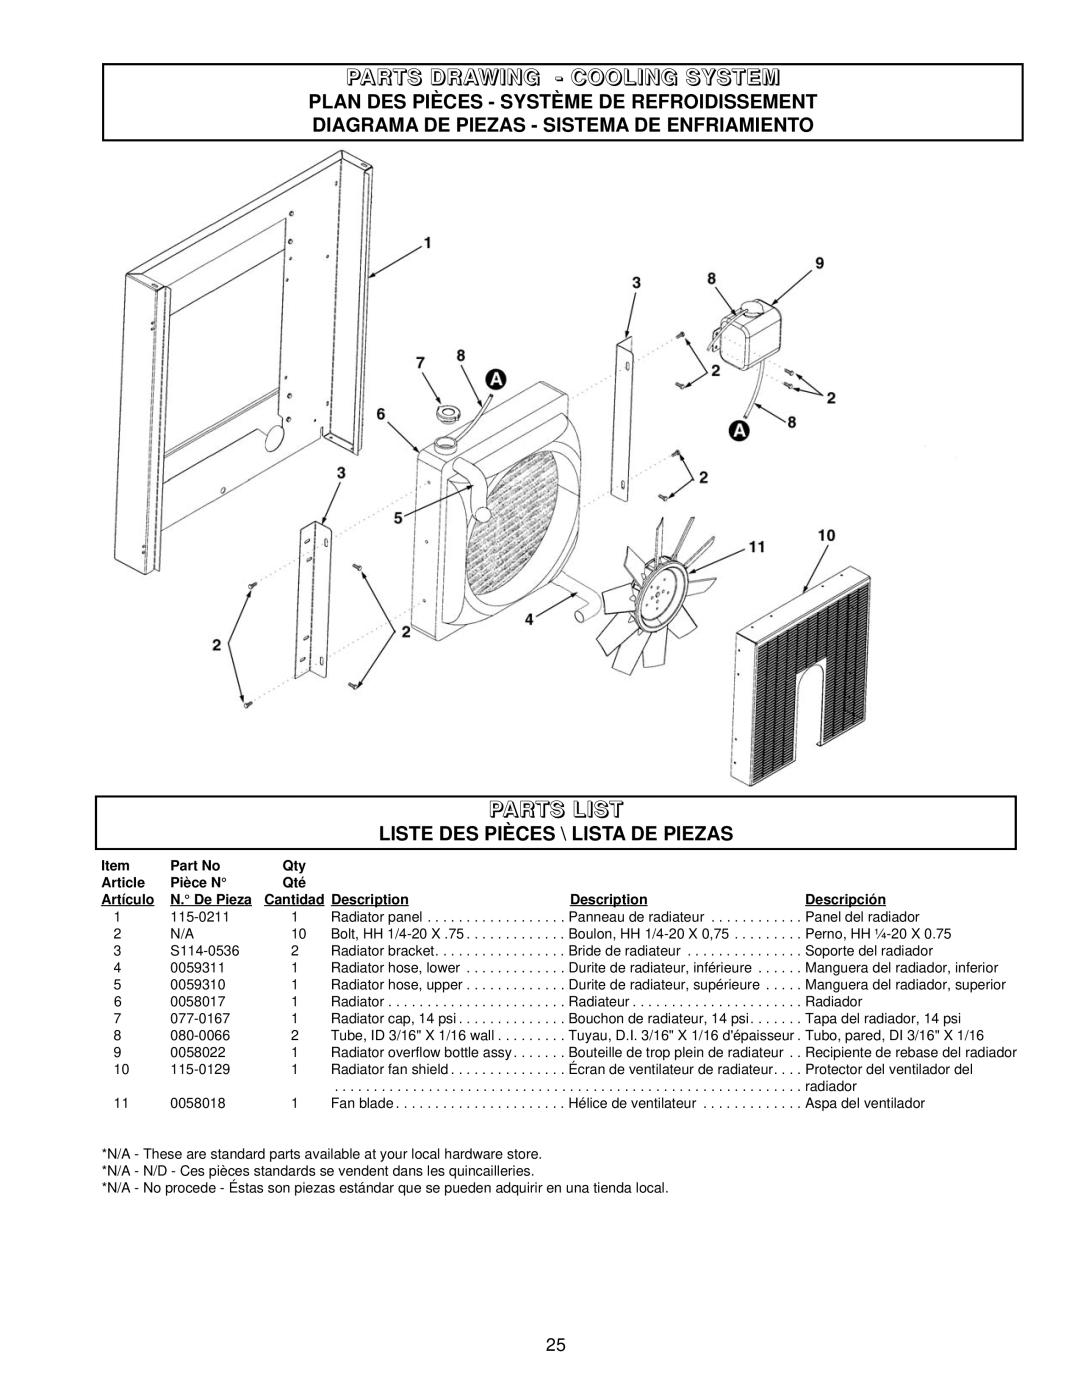 Coleman PM402511 Parts Drawing - Cooling System, Parts List, Plan Des Pièces - Système De Refroidissement, Article 